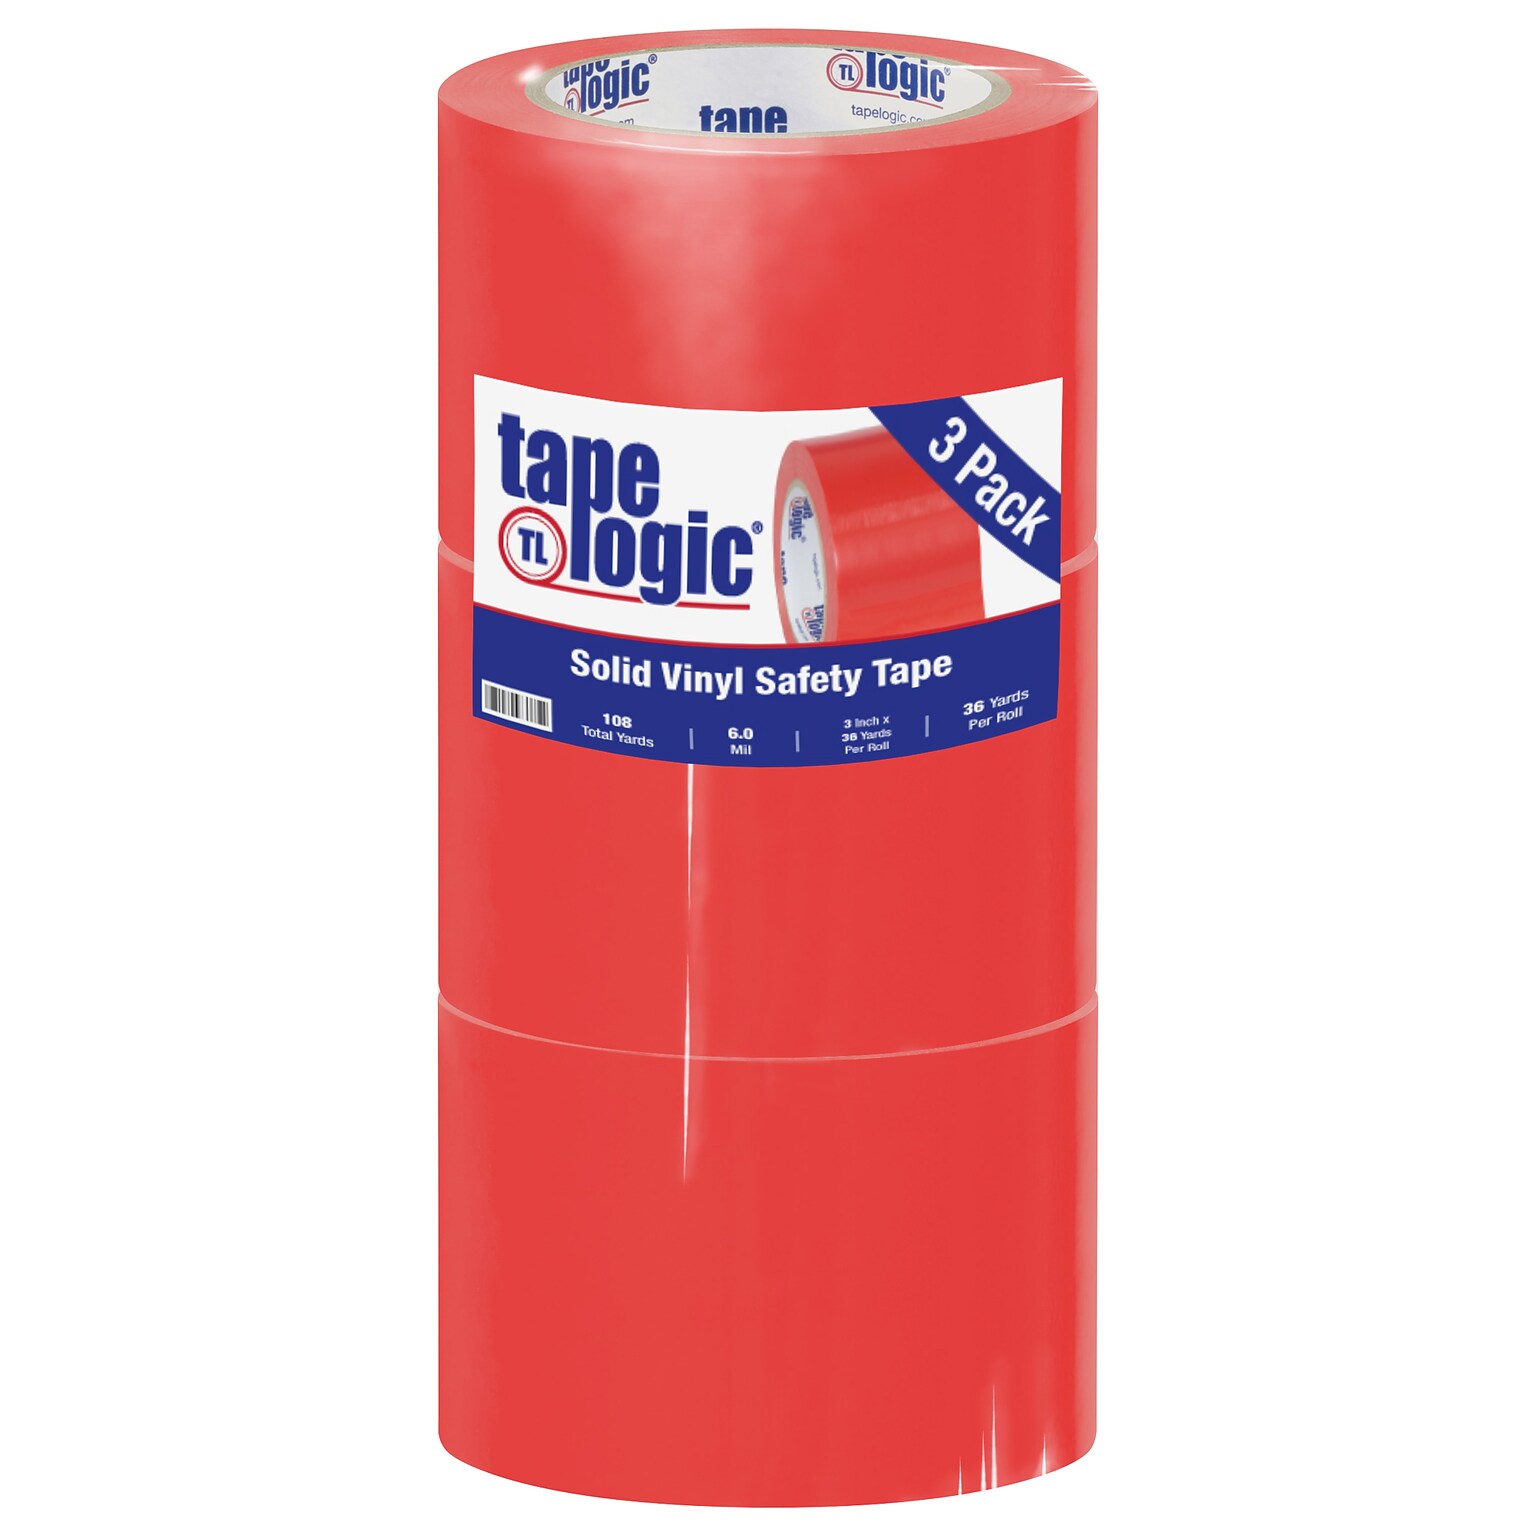 Tape Logic 3 x 36 yds. Solid Vinyl Safety Tape, Red, 3/Pack (T93363PKR)